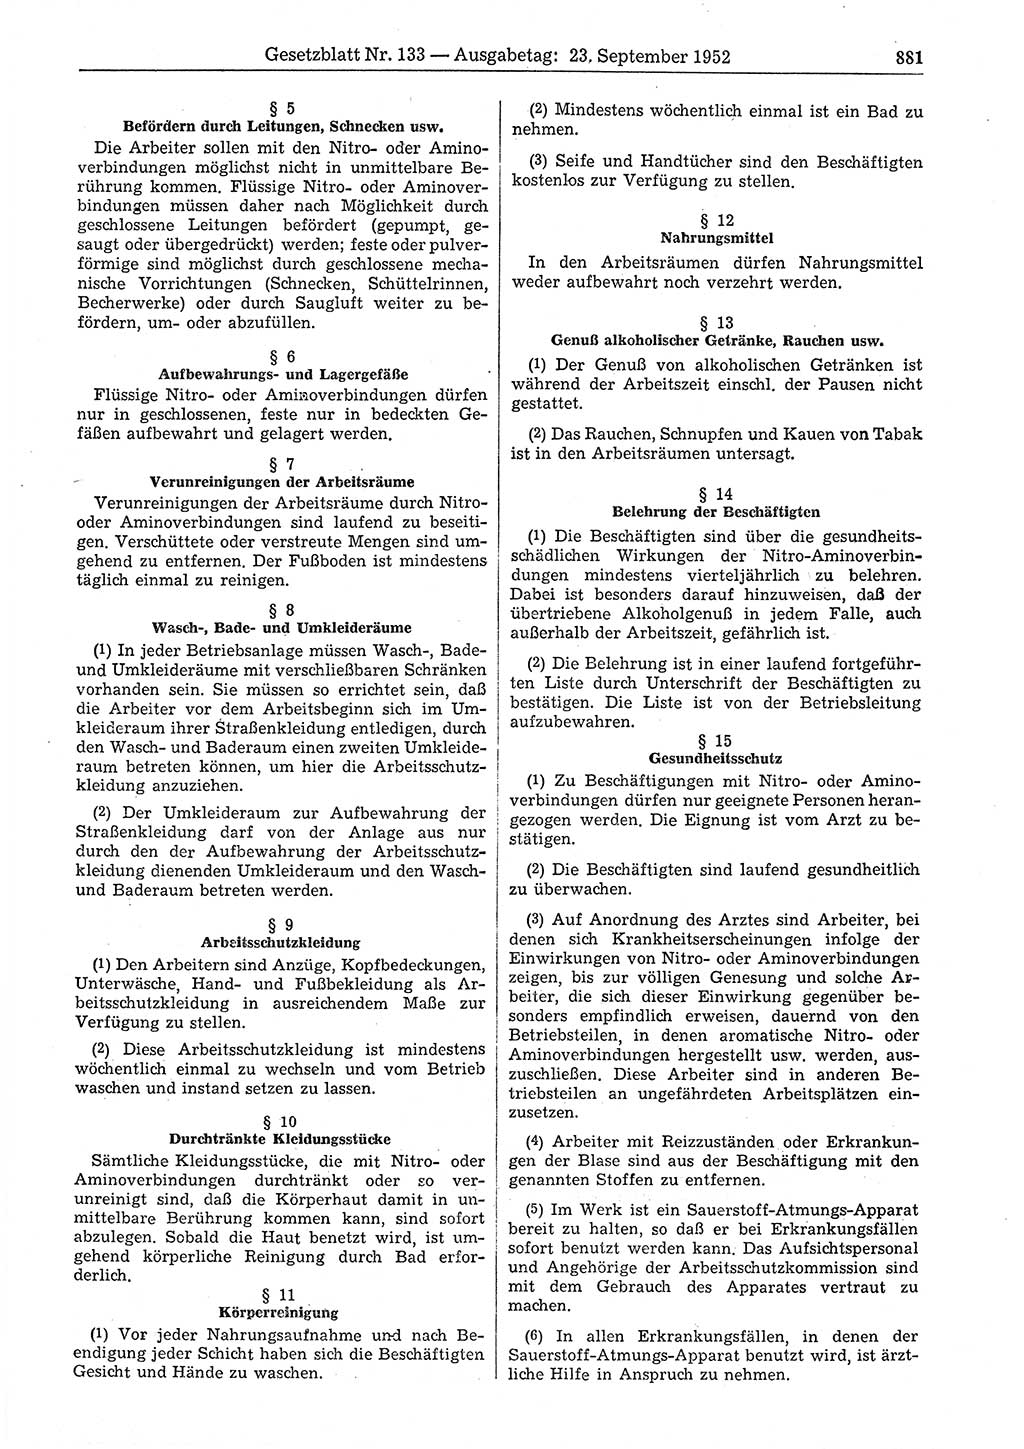 Gesetzblatt (GBl.) der Deutschen Demokratischen Republik (DDR) 1952, Seite 881 (GBl. DDR 1952, S. 881)